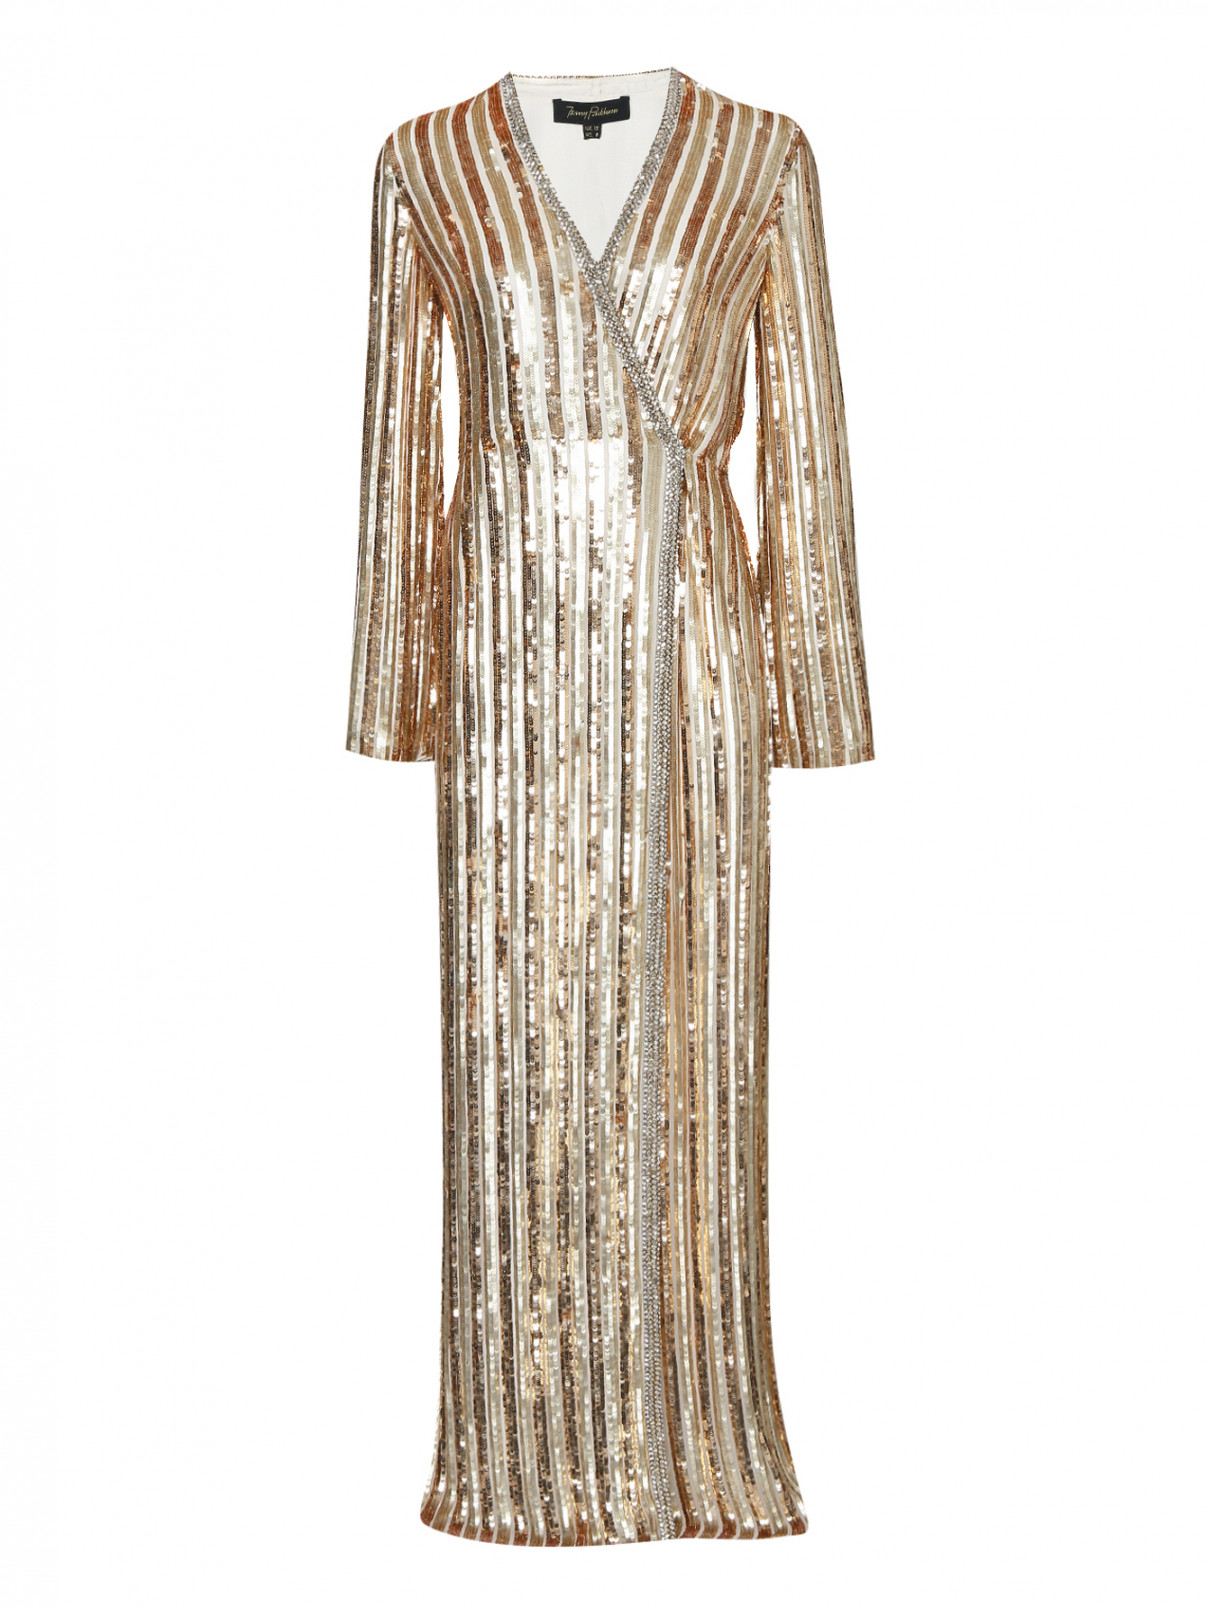 Платье-макси с запахом в паетках, декорированное кристаллами Jenny Packham  –  Общий вид  – Цвет:  Золотой